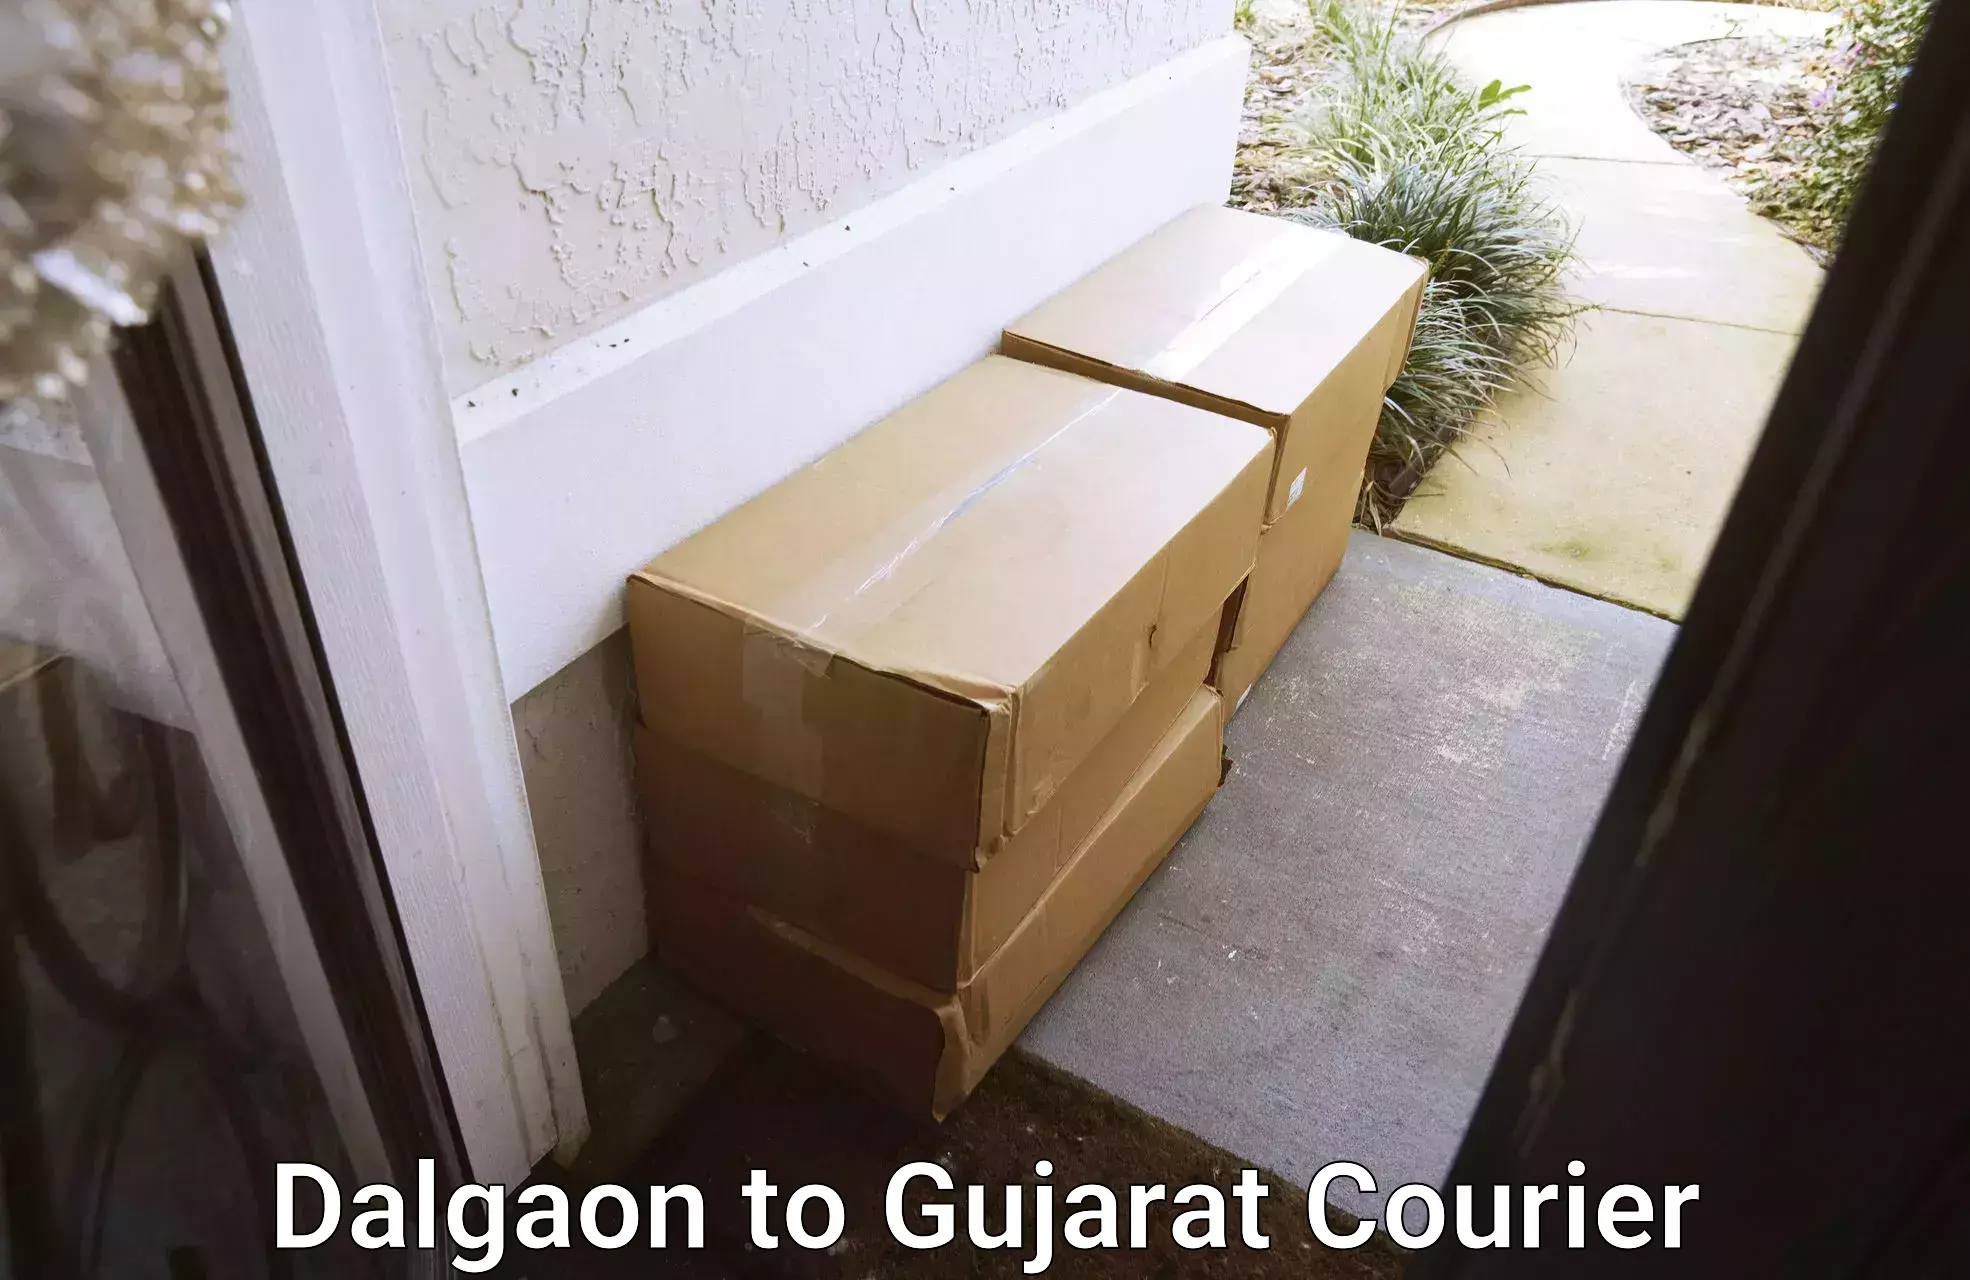 Individual parcel service Dalgaon to Banaskantha